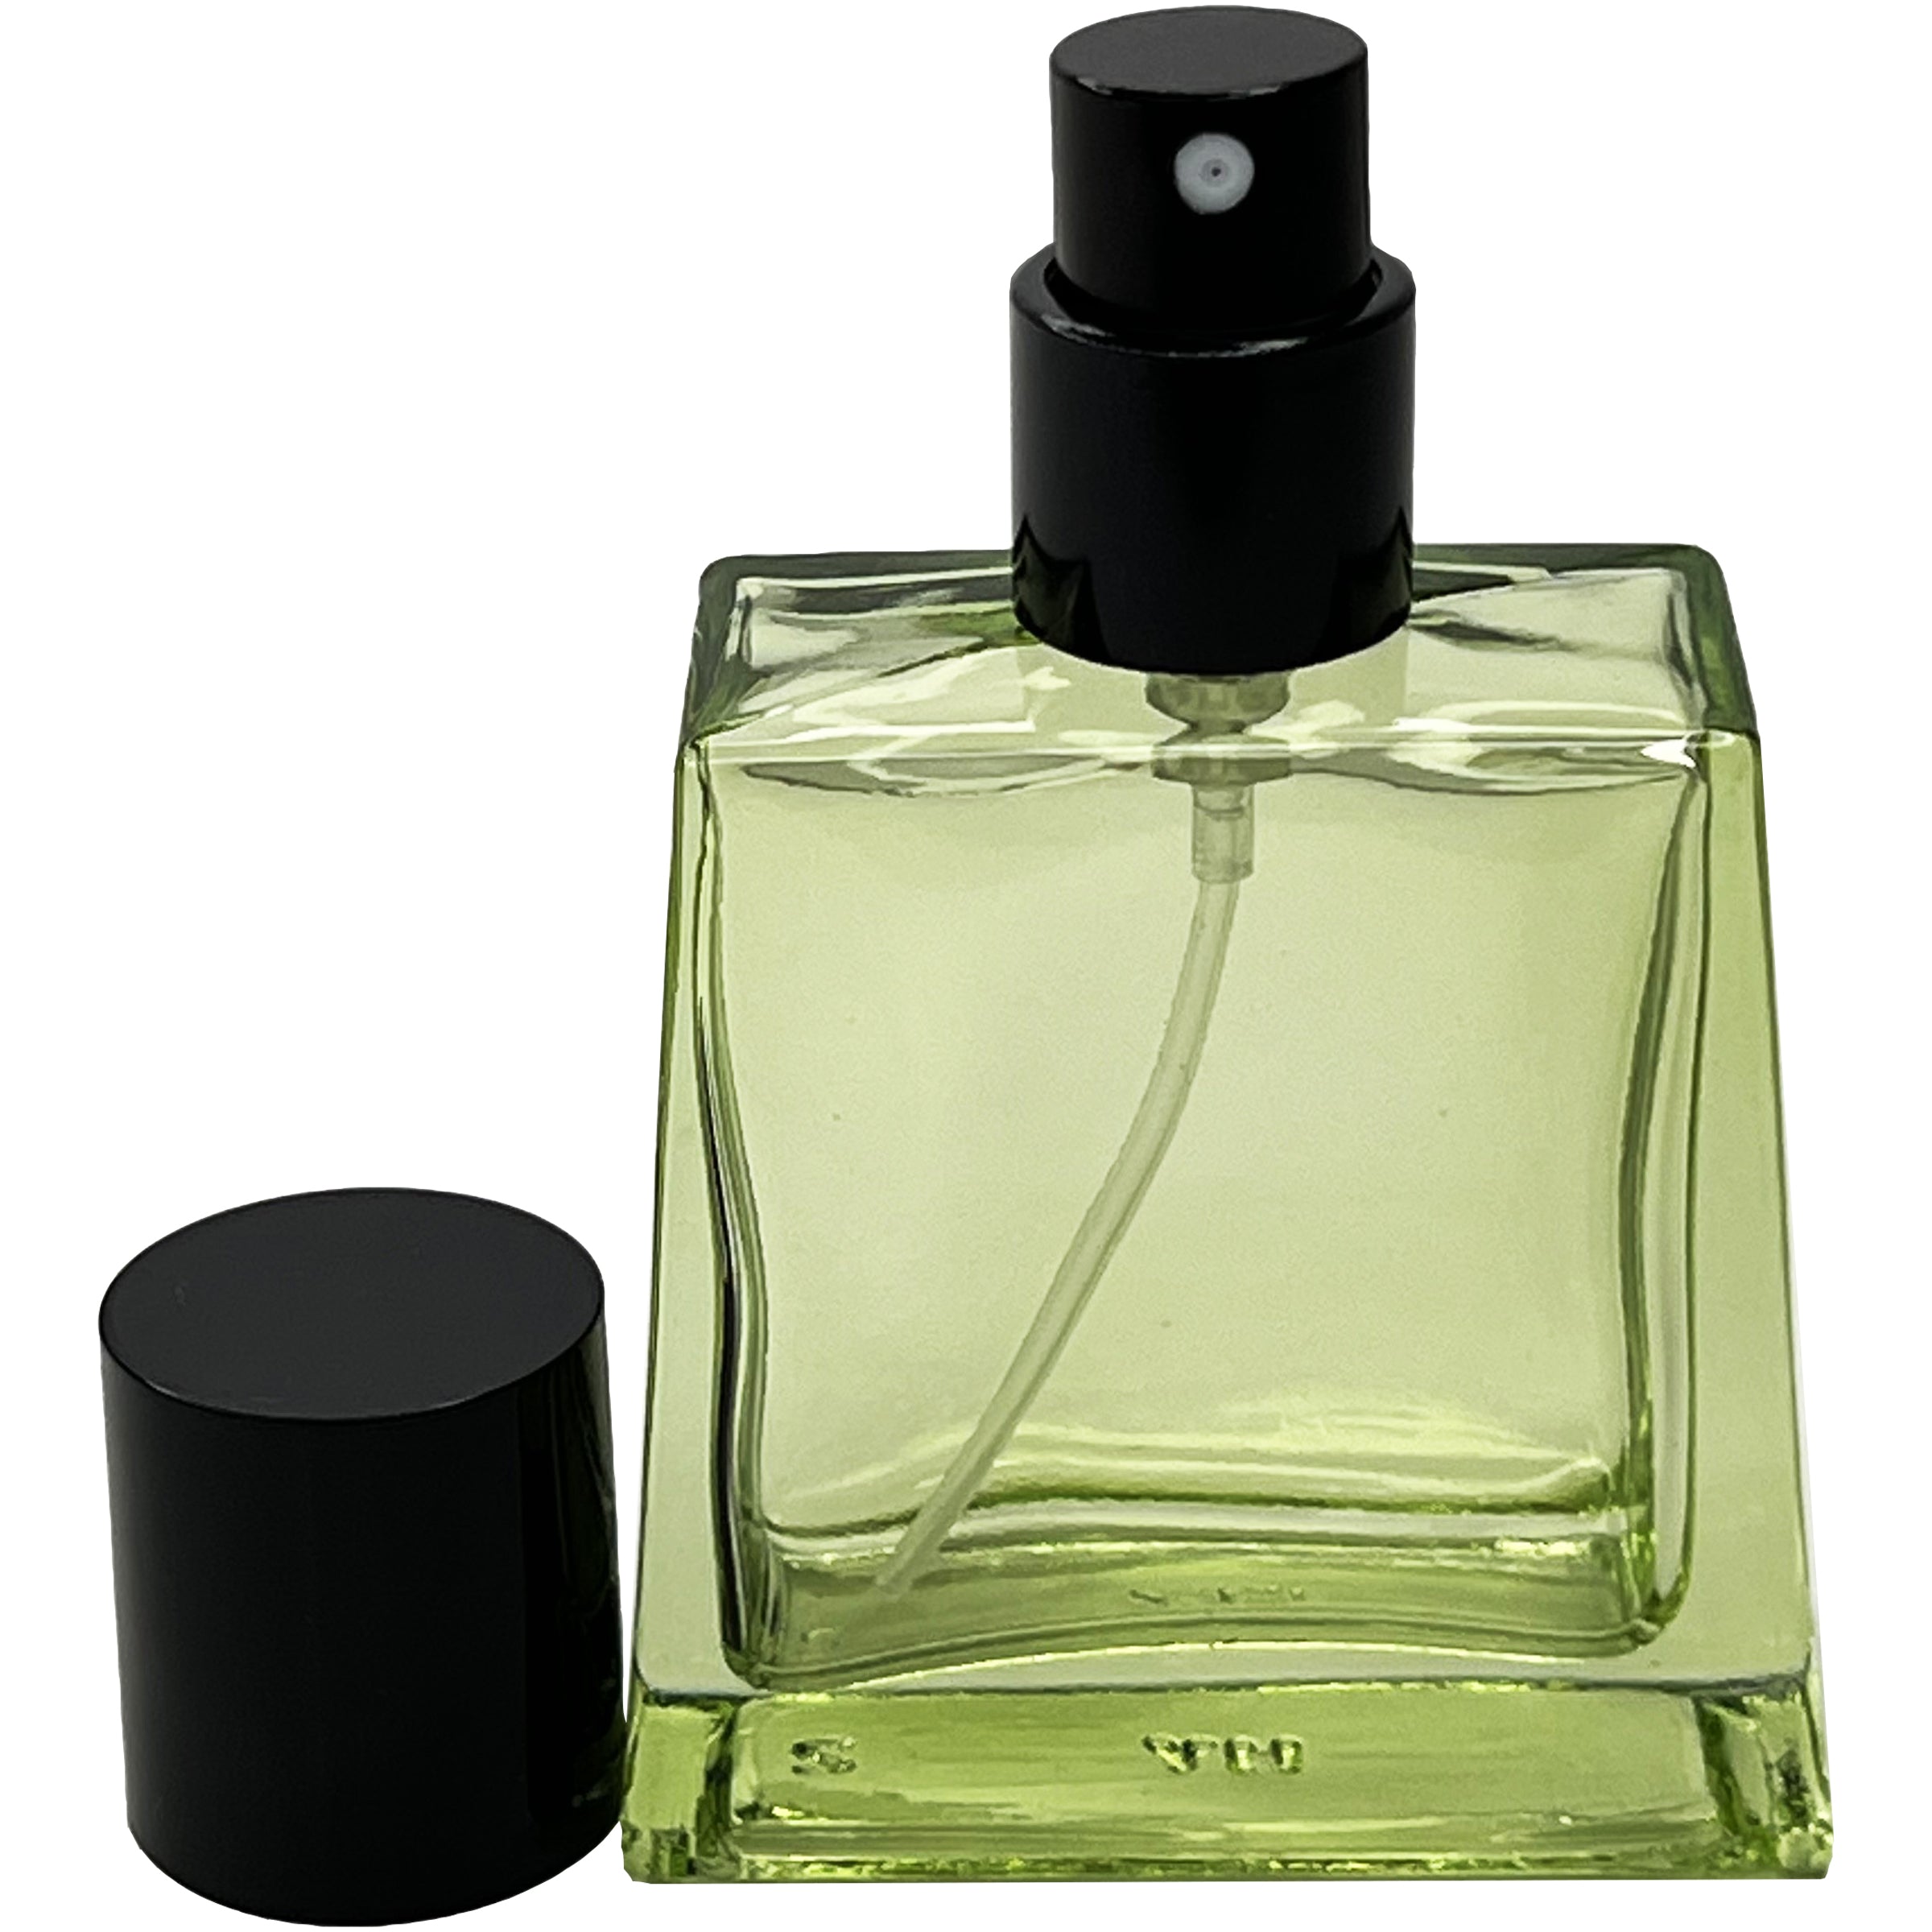 30ml 1oz colored glass trapezoid perfume spray bottles